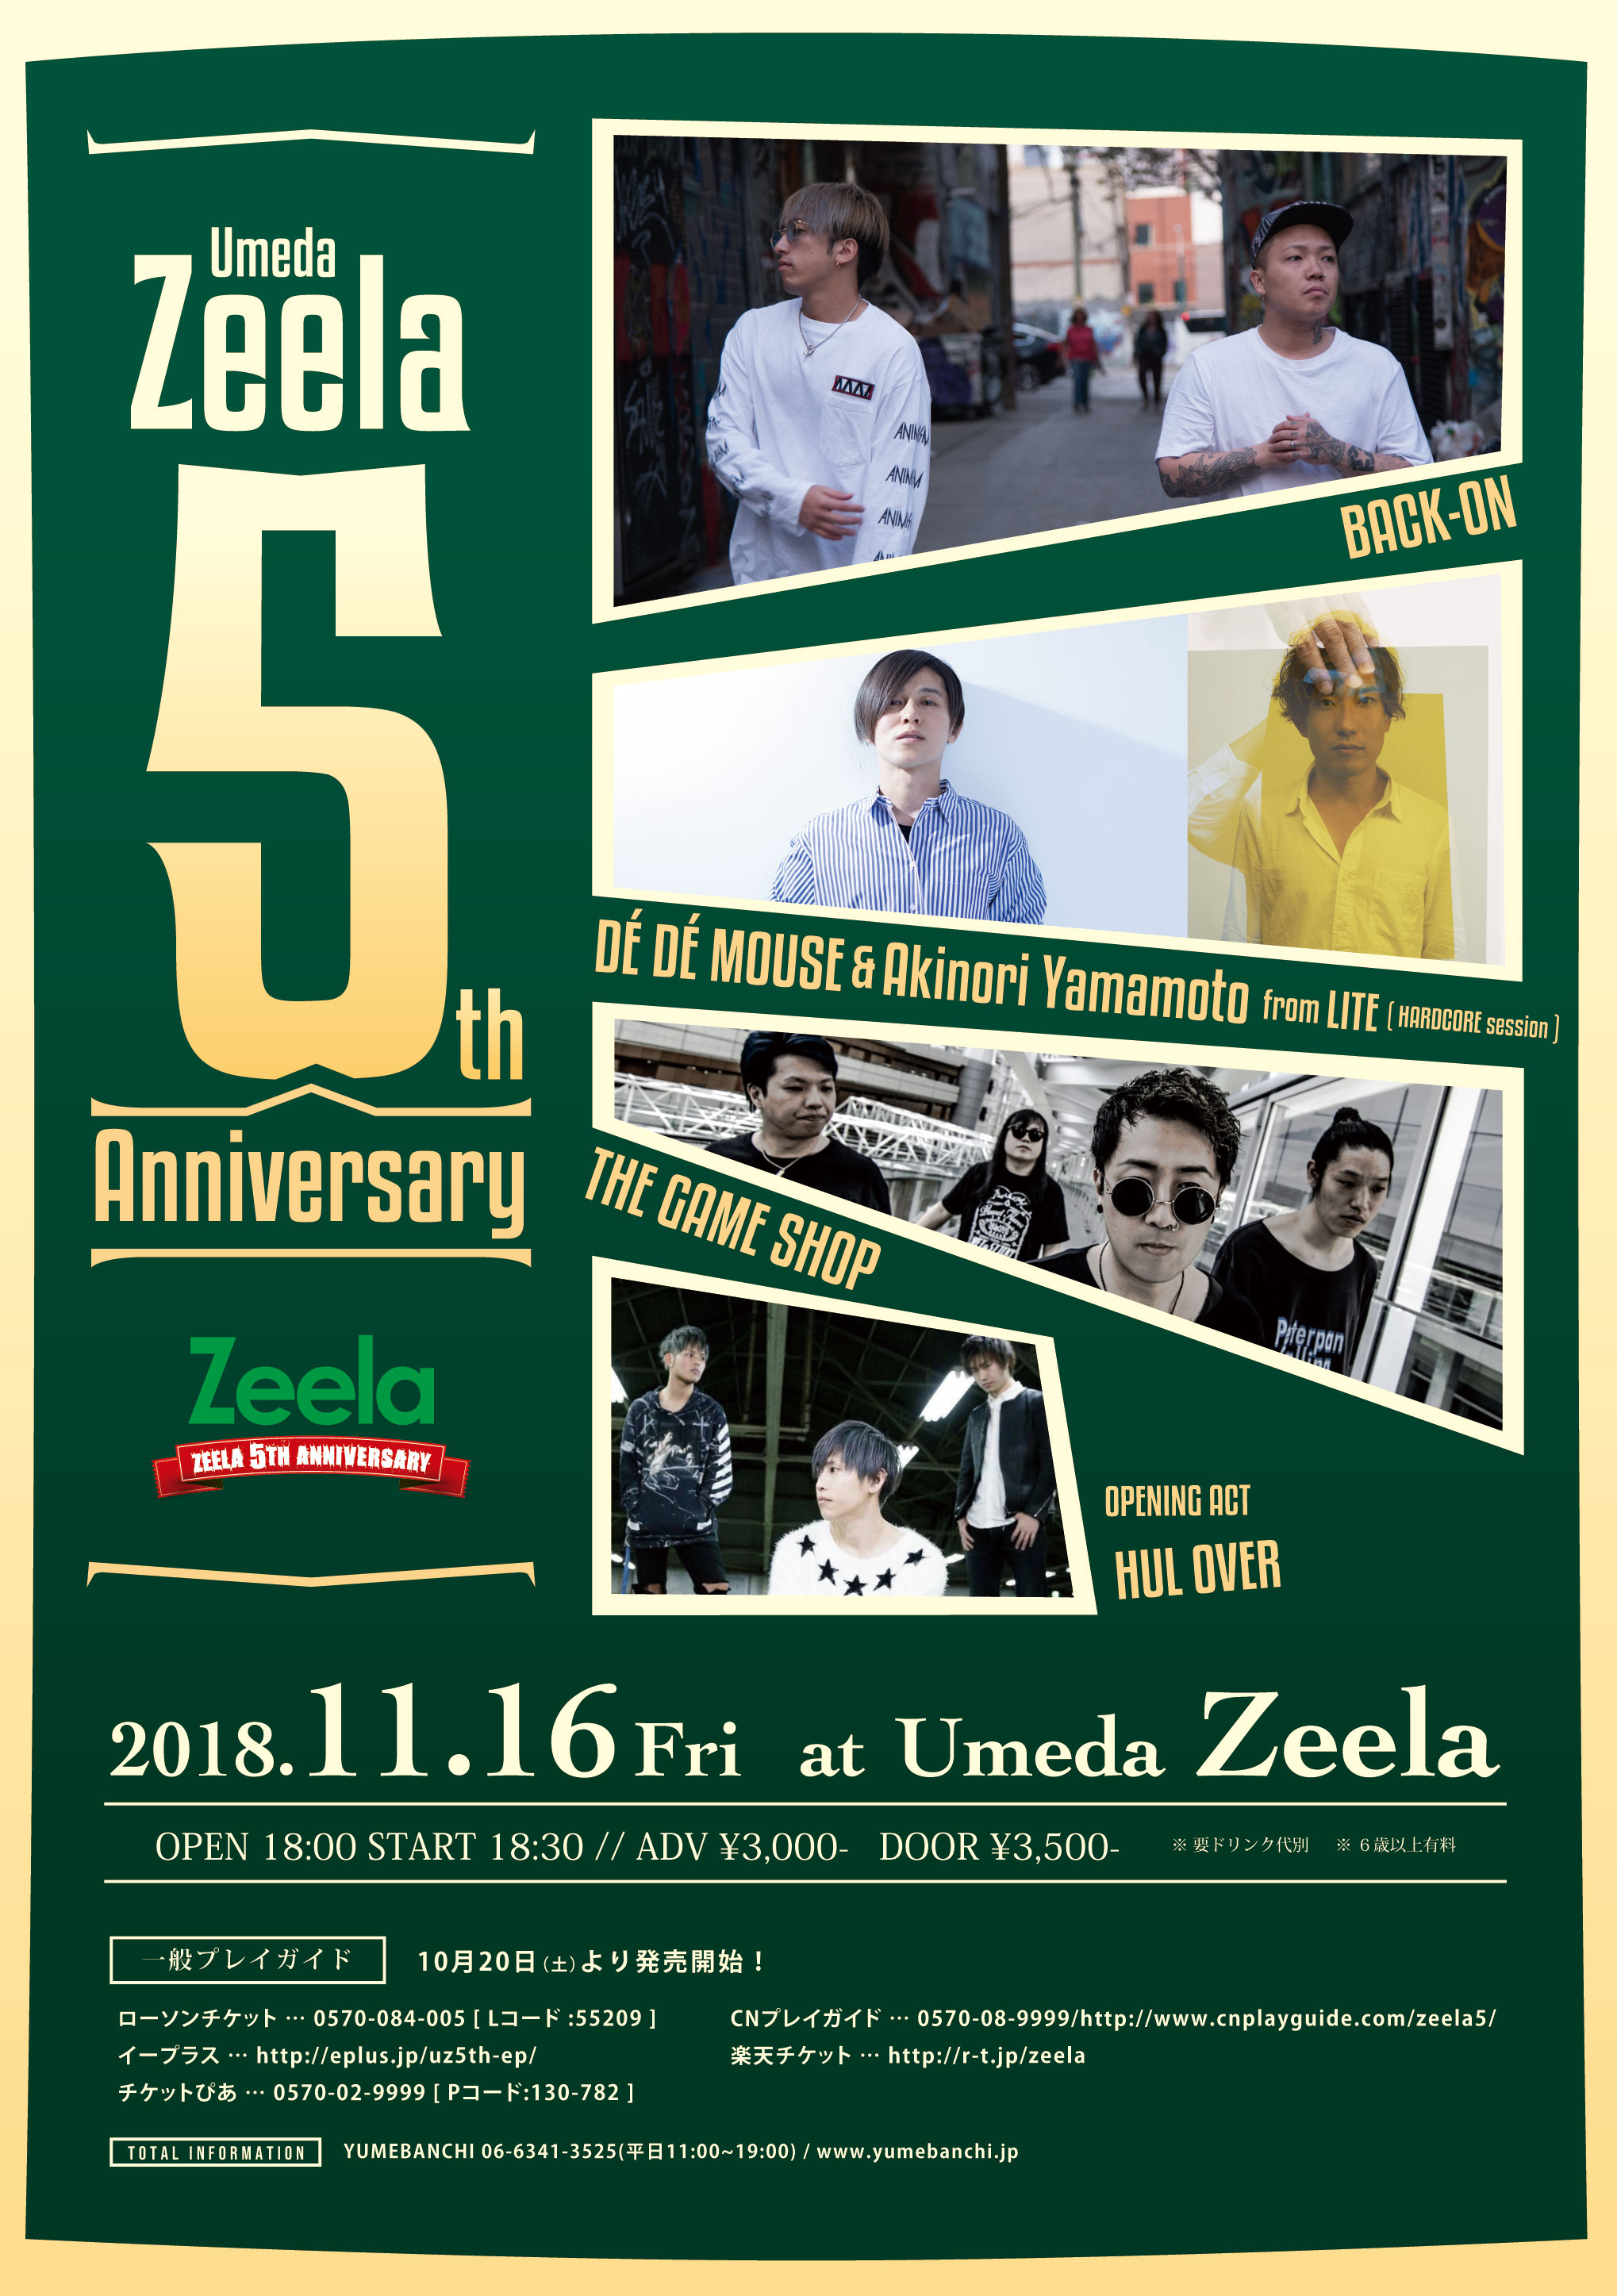 11月16日、BACK-ON、DÉ DÉ MOUSEらを迎えて「Umeda Zeela 5th Anniversary」イベント開催！